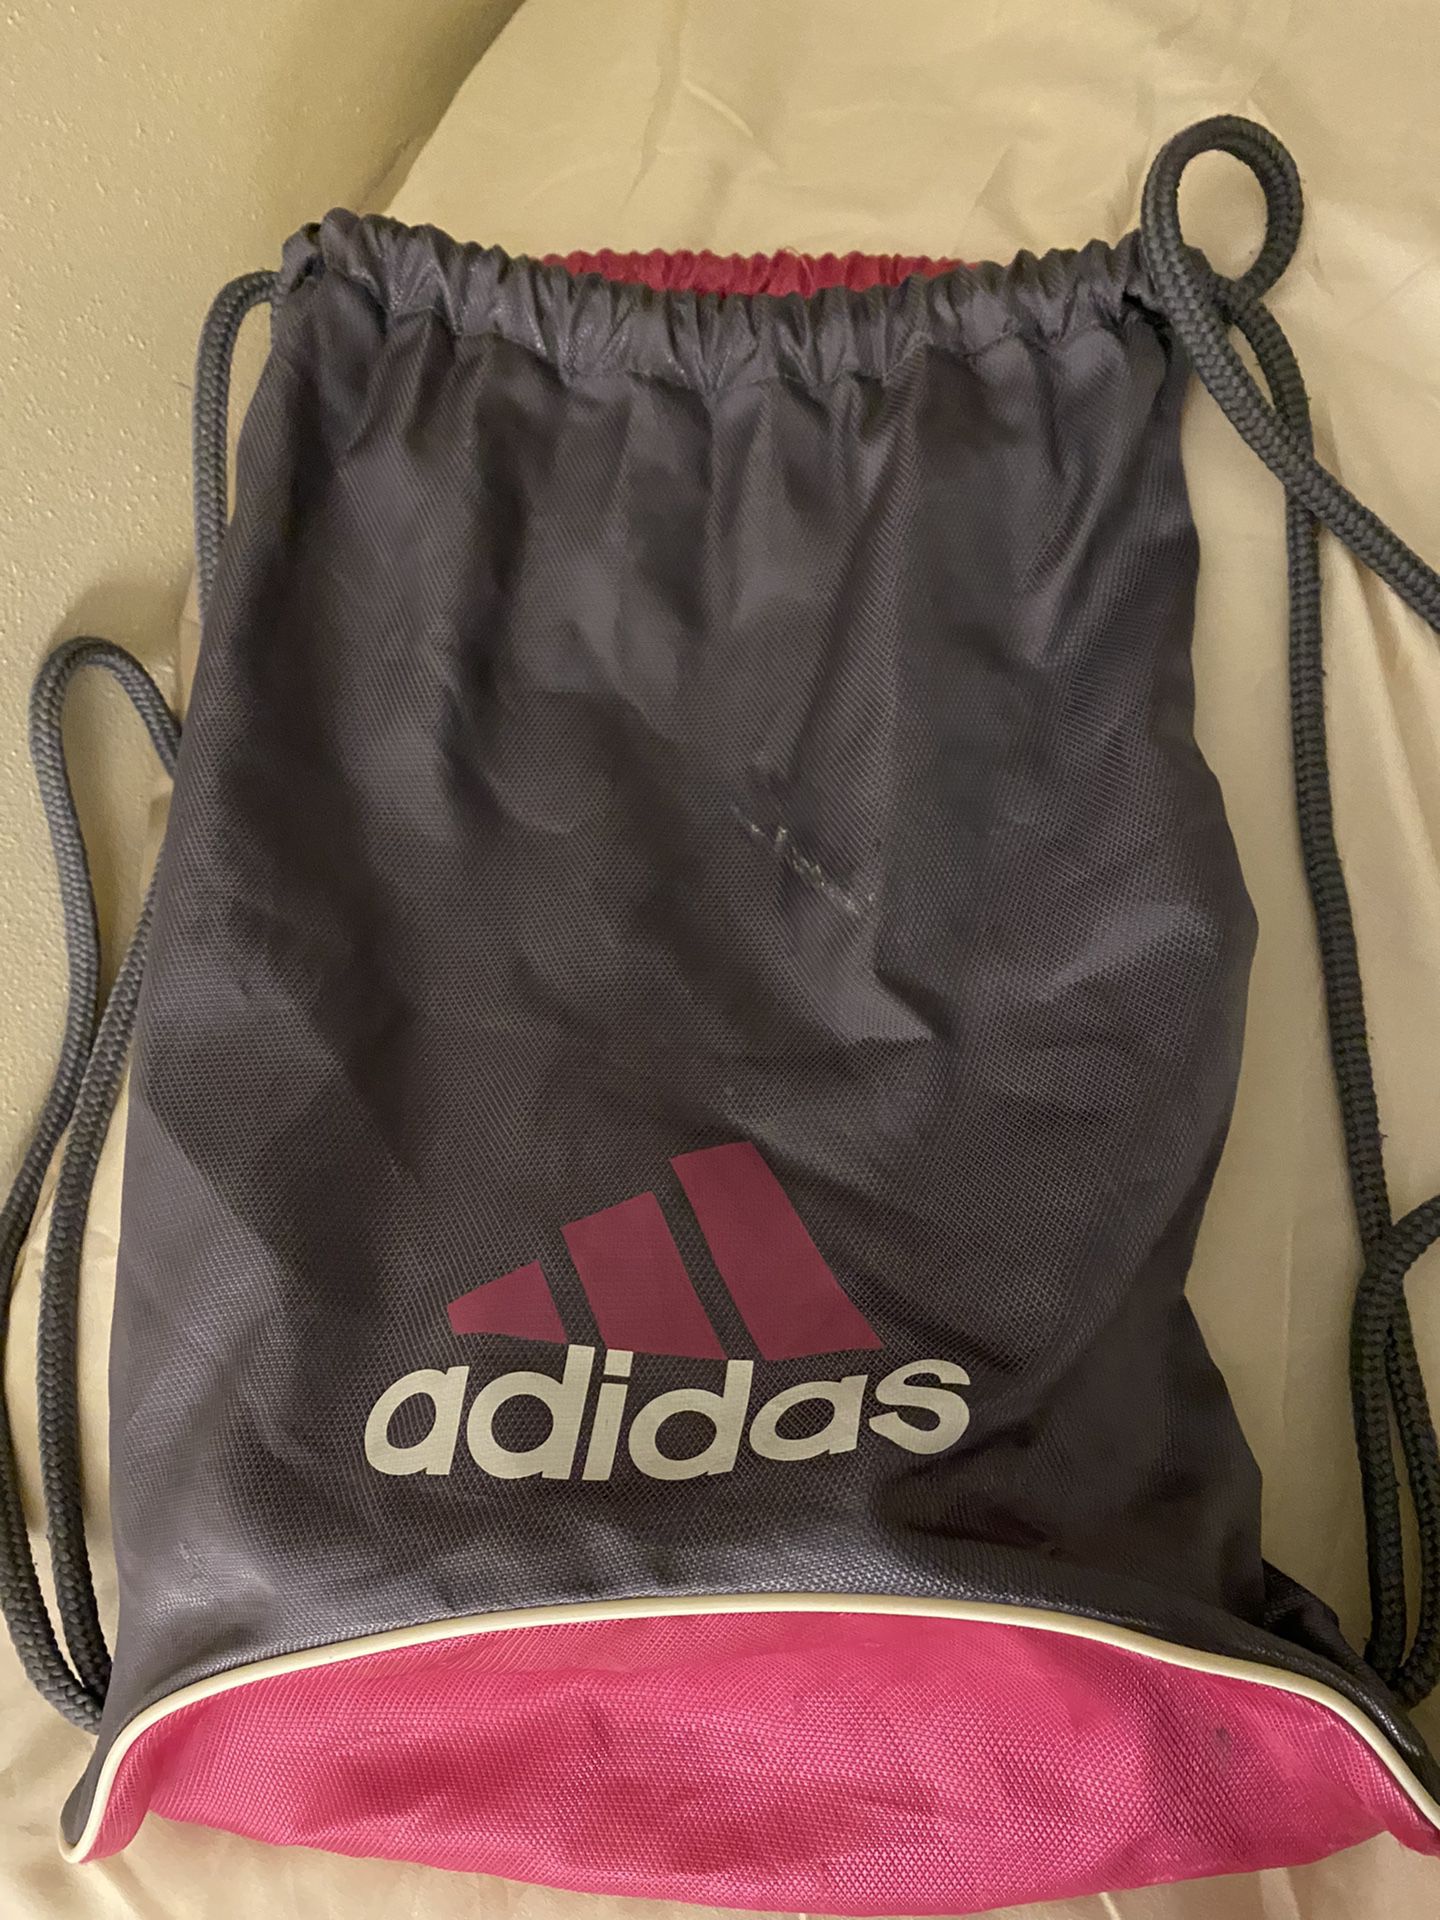 Adidas’s Bag 